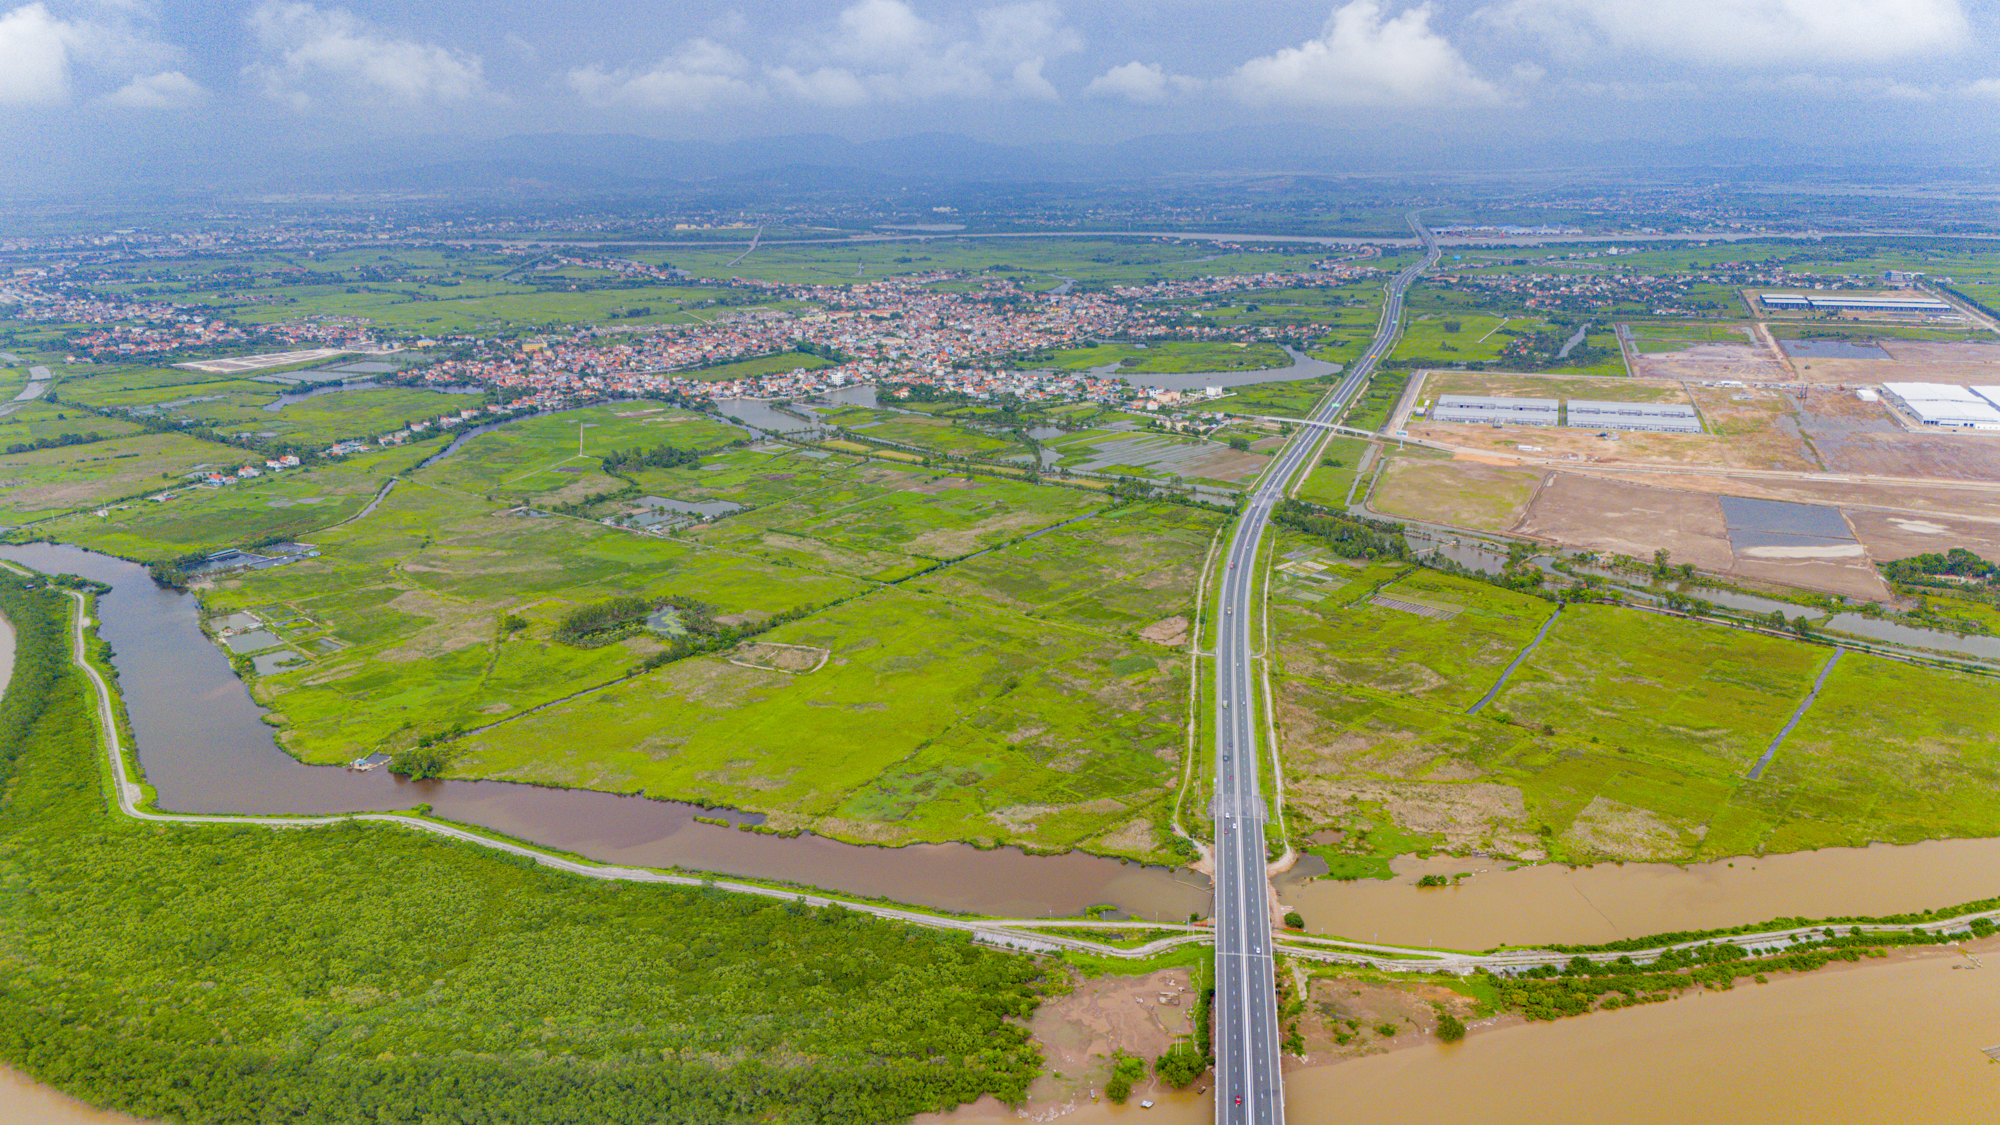 Thị xã là hạt nhân tăng trưởng mới của Quảng Ninh, được đầu tư chỉ sau Hạ Long, có khu kinh tế thu hút tỷ USD, sắp lên thành phố- Ảnh 11.